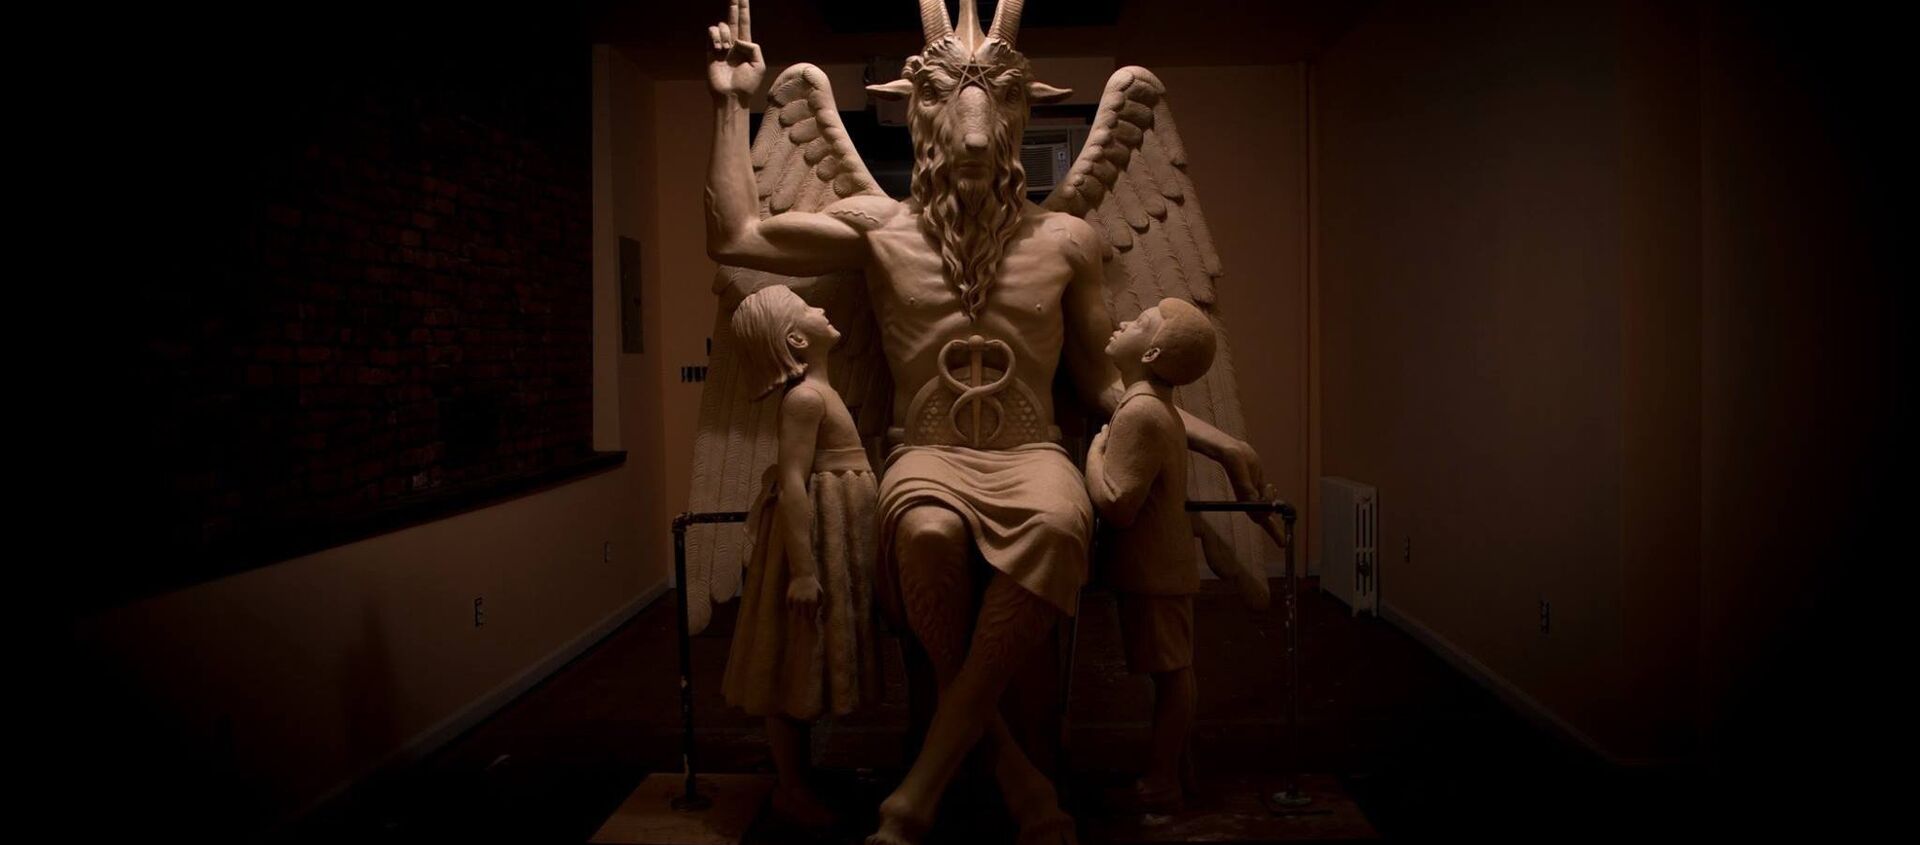 Michigan'daki Satanist Tapınağı'nda bulunan Bafomet heykeli - Sputnik Türkiye, 1920, 18.08.2018